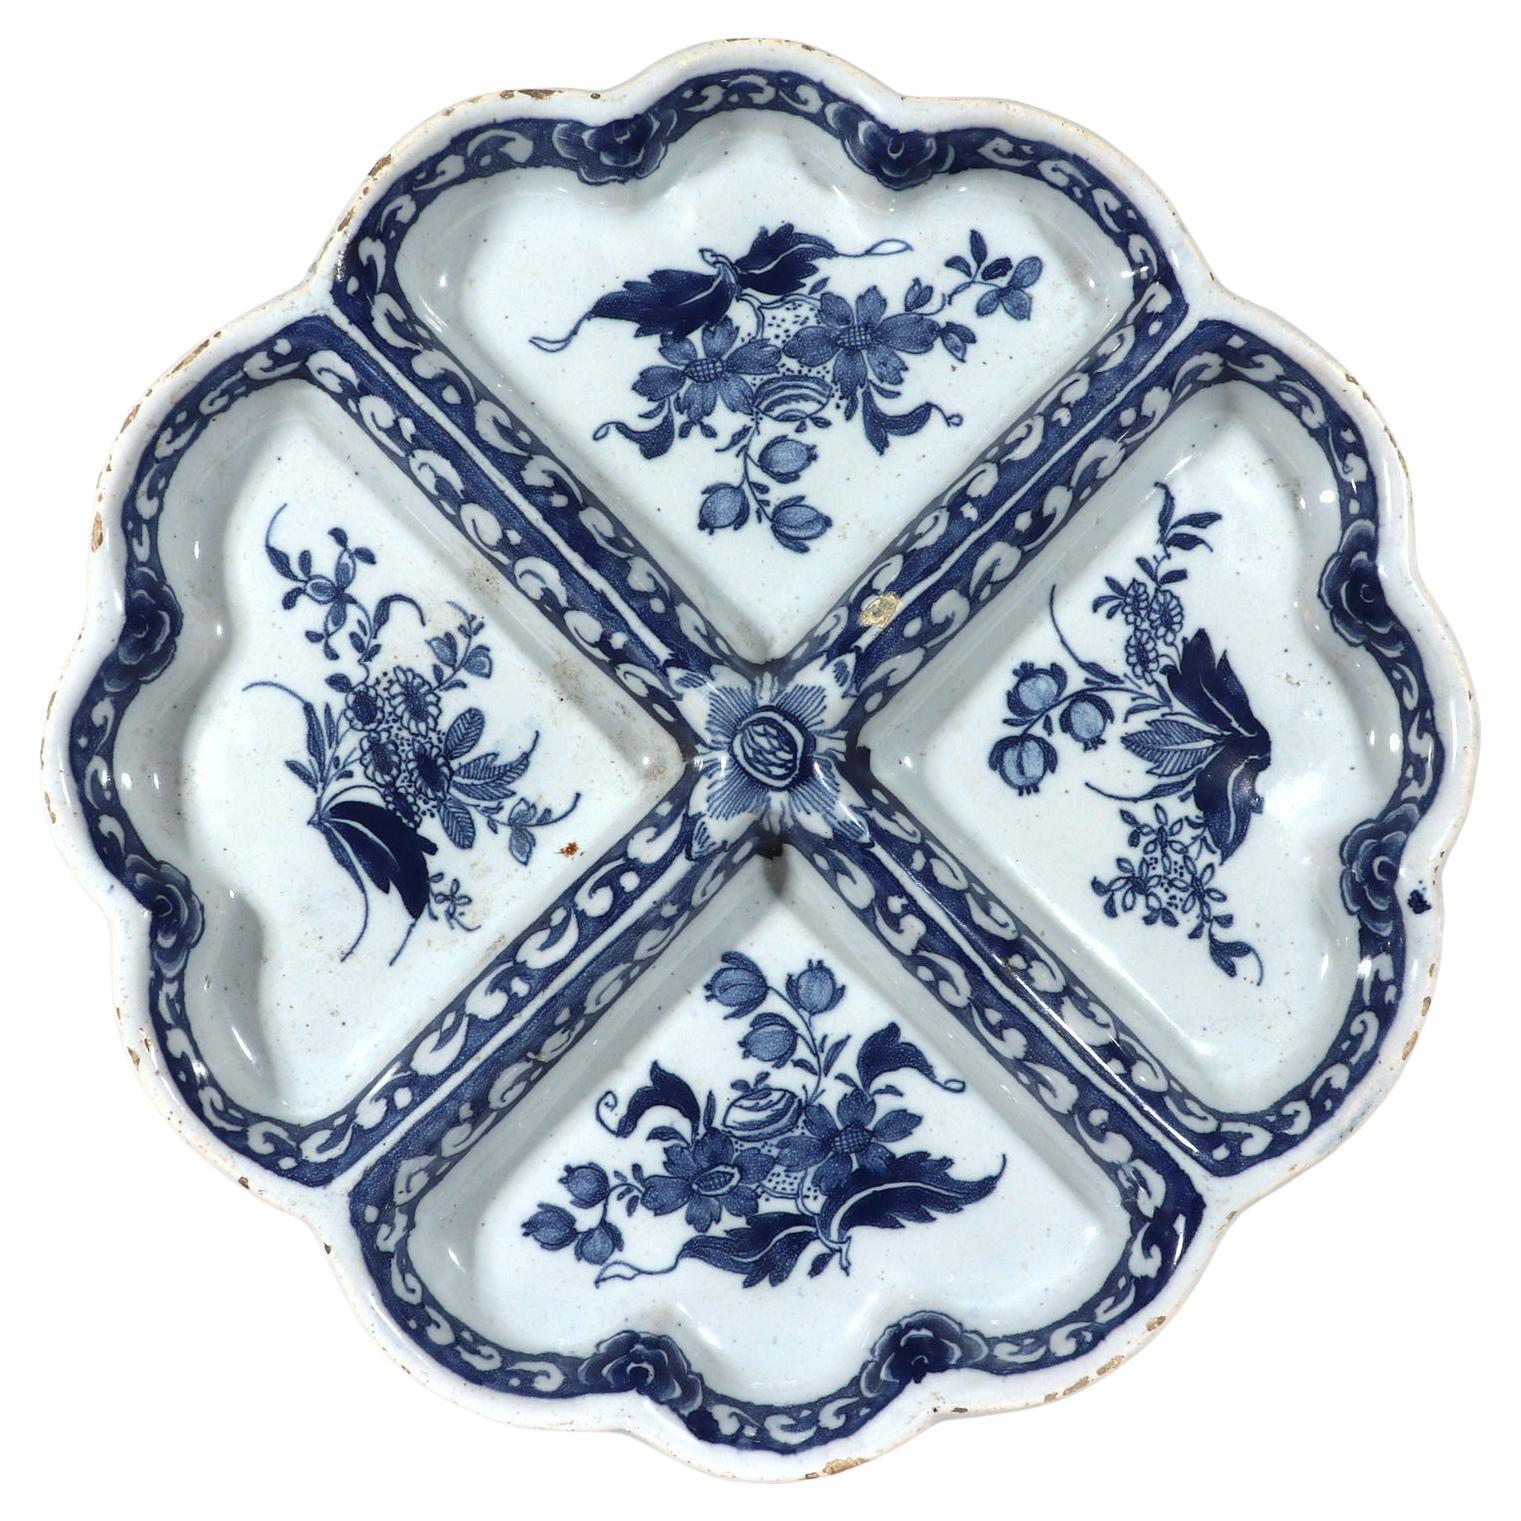 Englische Delfter Sweetmeat-Schale aus dem 18. Jahrhundert in Blau und Weiß, wahrscheinlich London